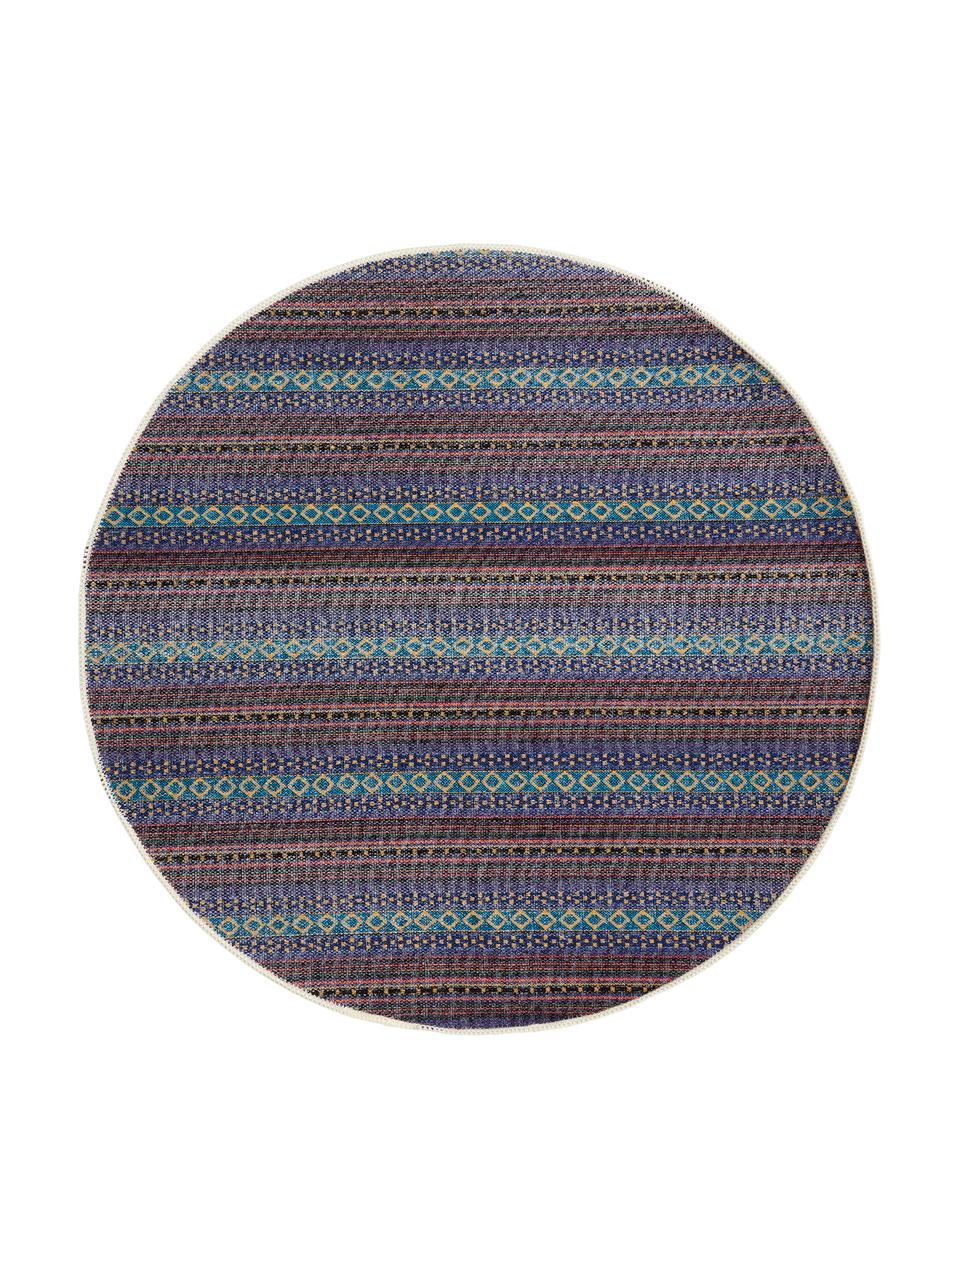 Runder Teppich Lauren mit Blumenprint, 60% Polyester, 30% thermoplastisches Polyurethan, 10% Baumwolle, Braun, Beige, Ø 90 cm (Größe XS)